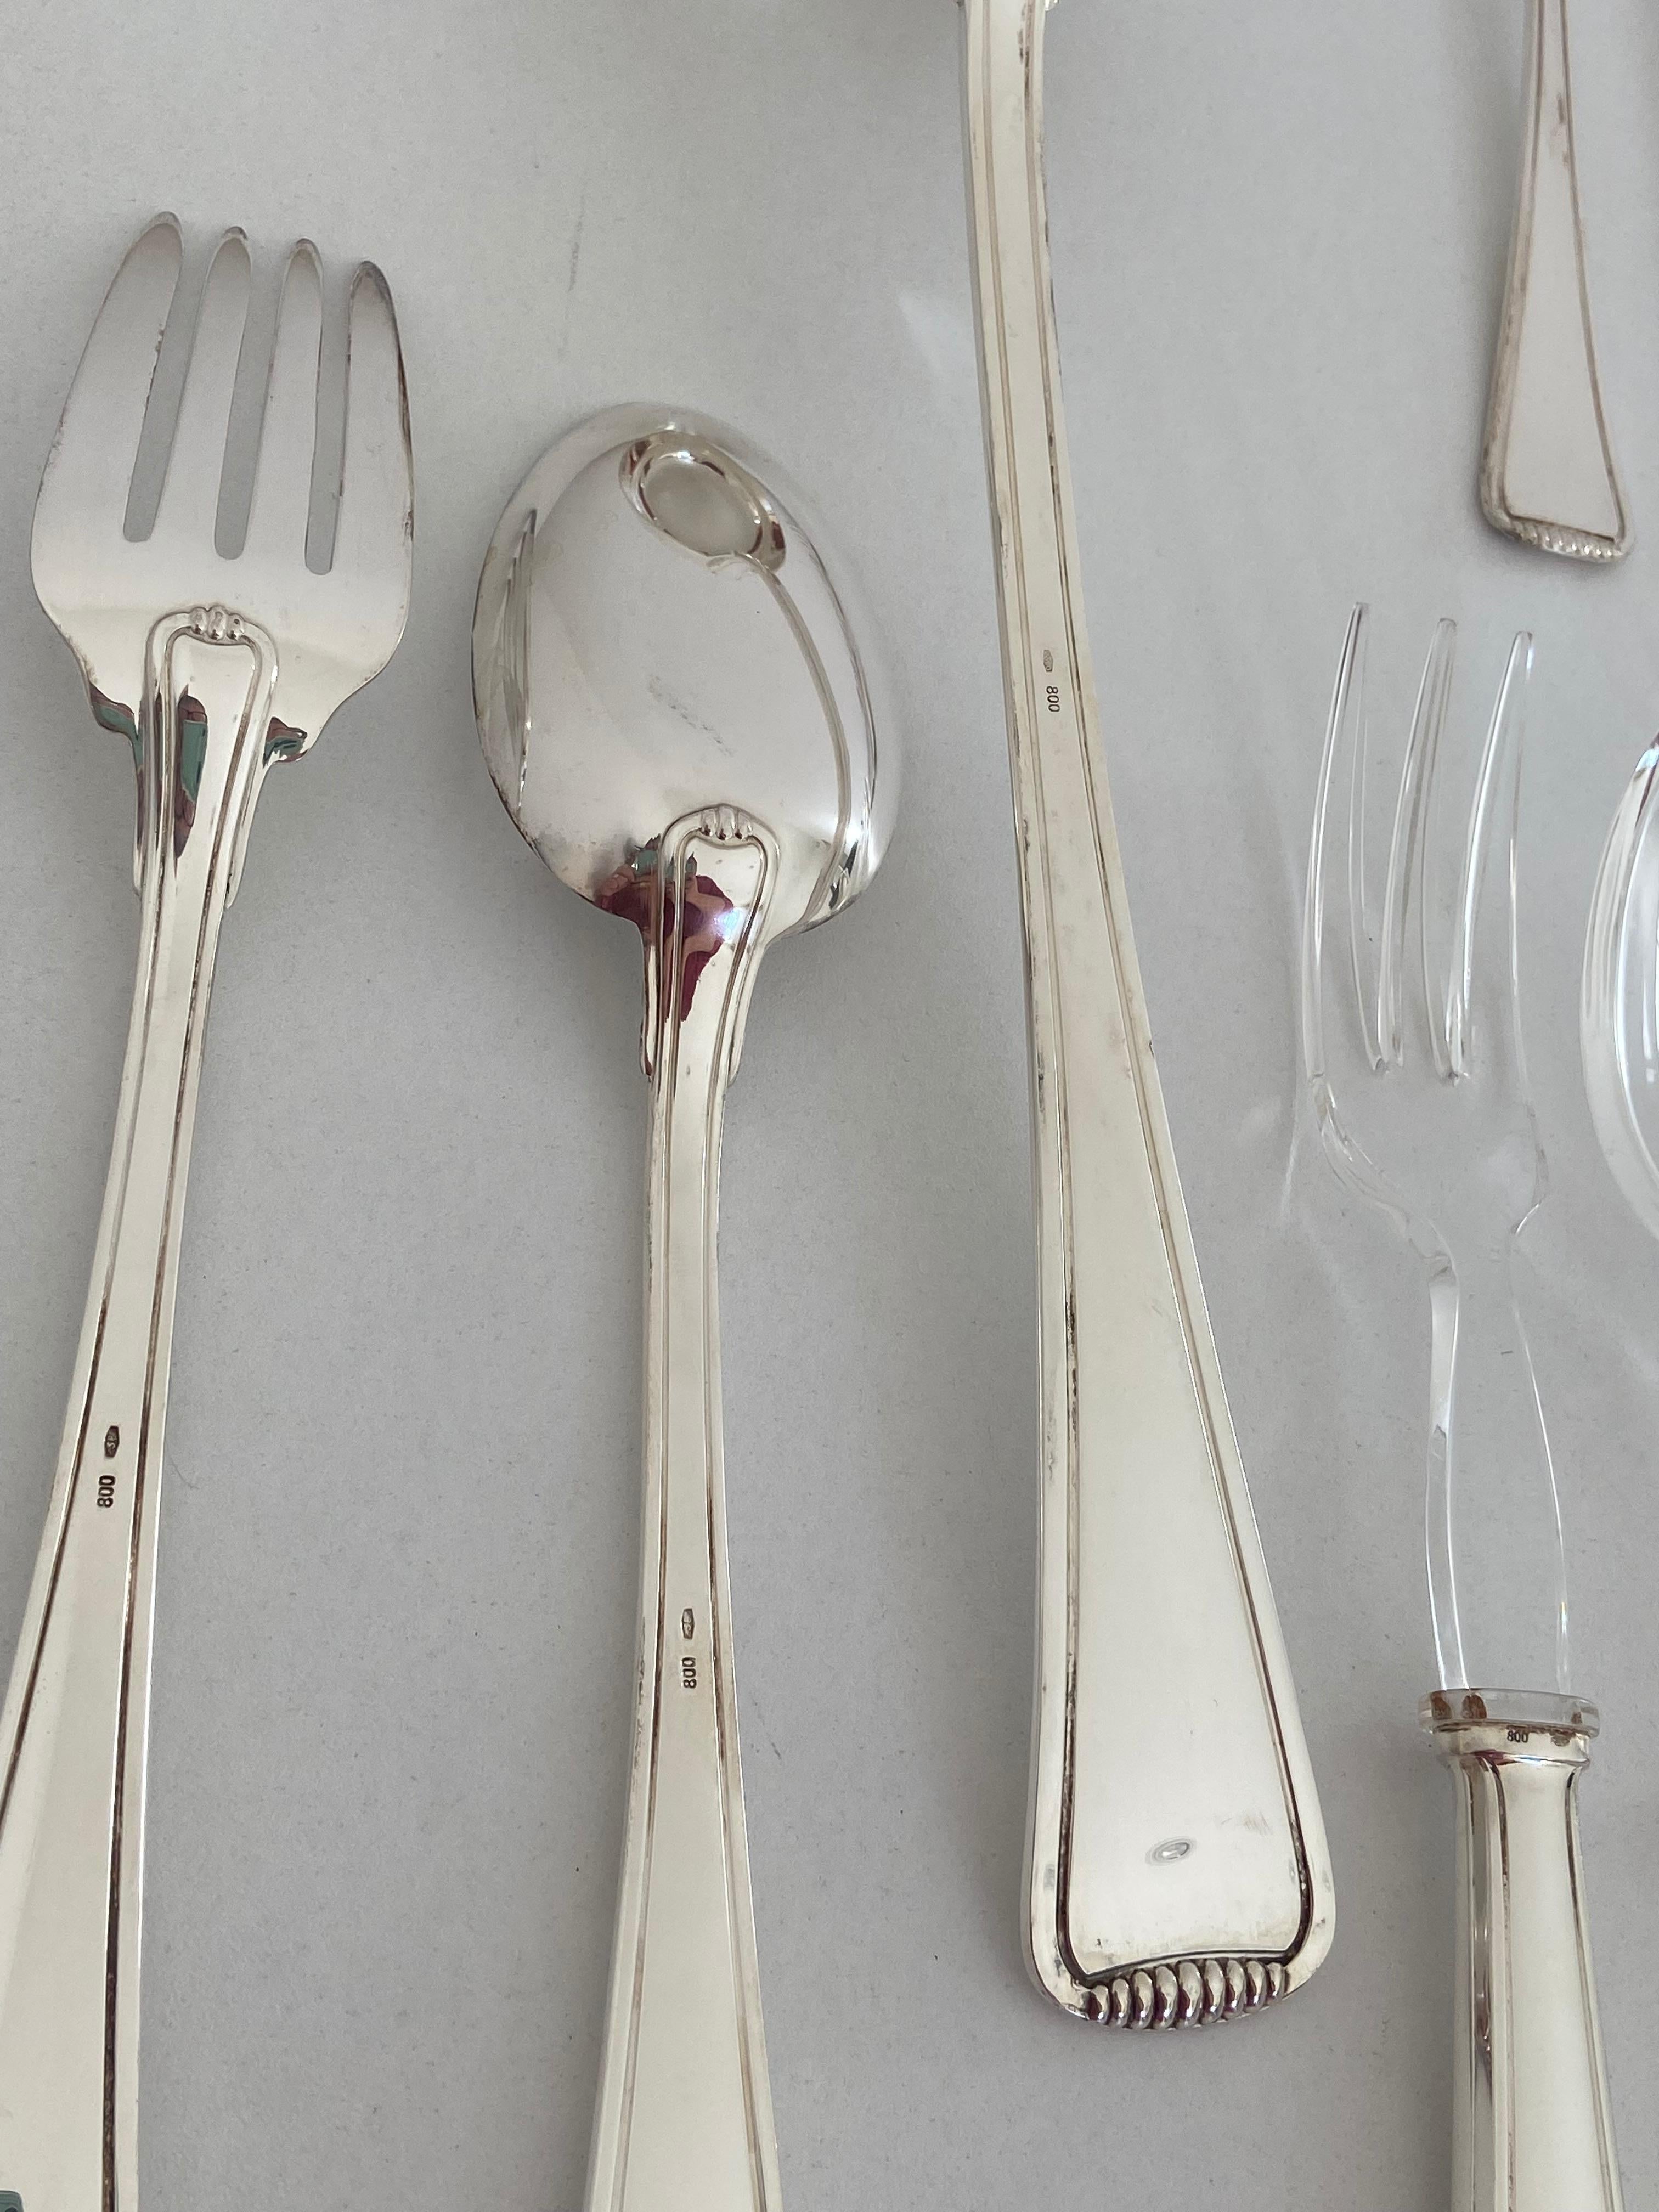 25-Piece Cutlery in 800 Silver, Morini Silverware from Bologna For Sale 2